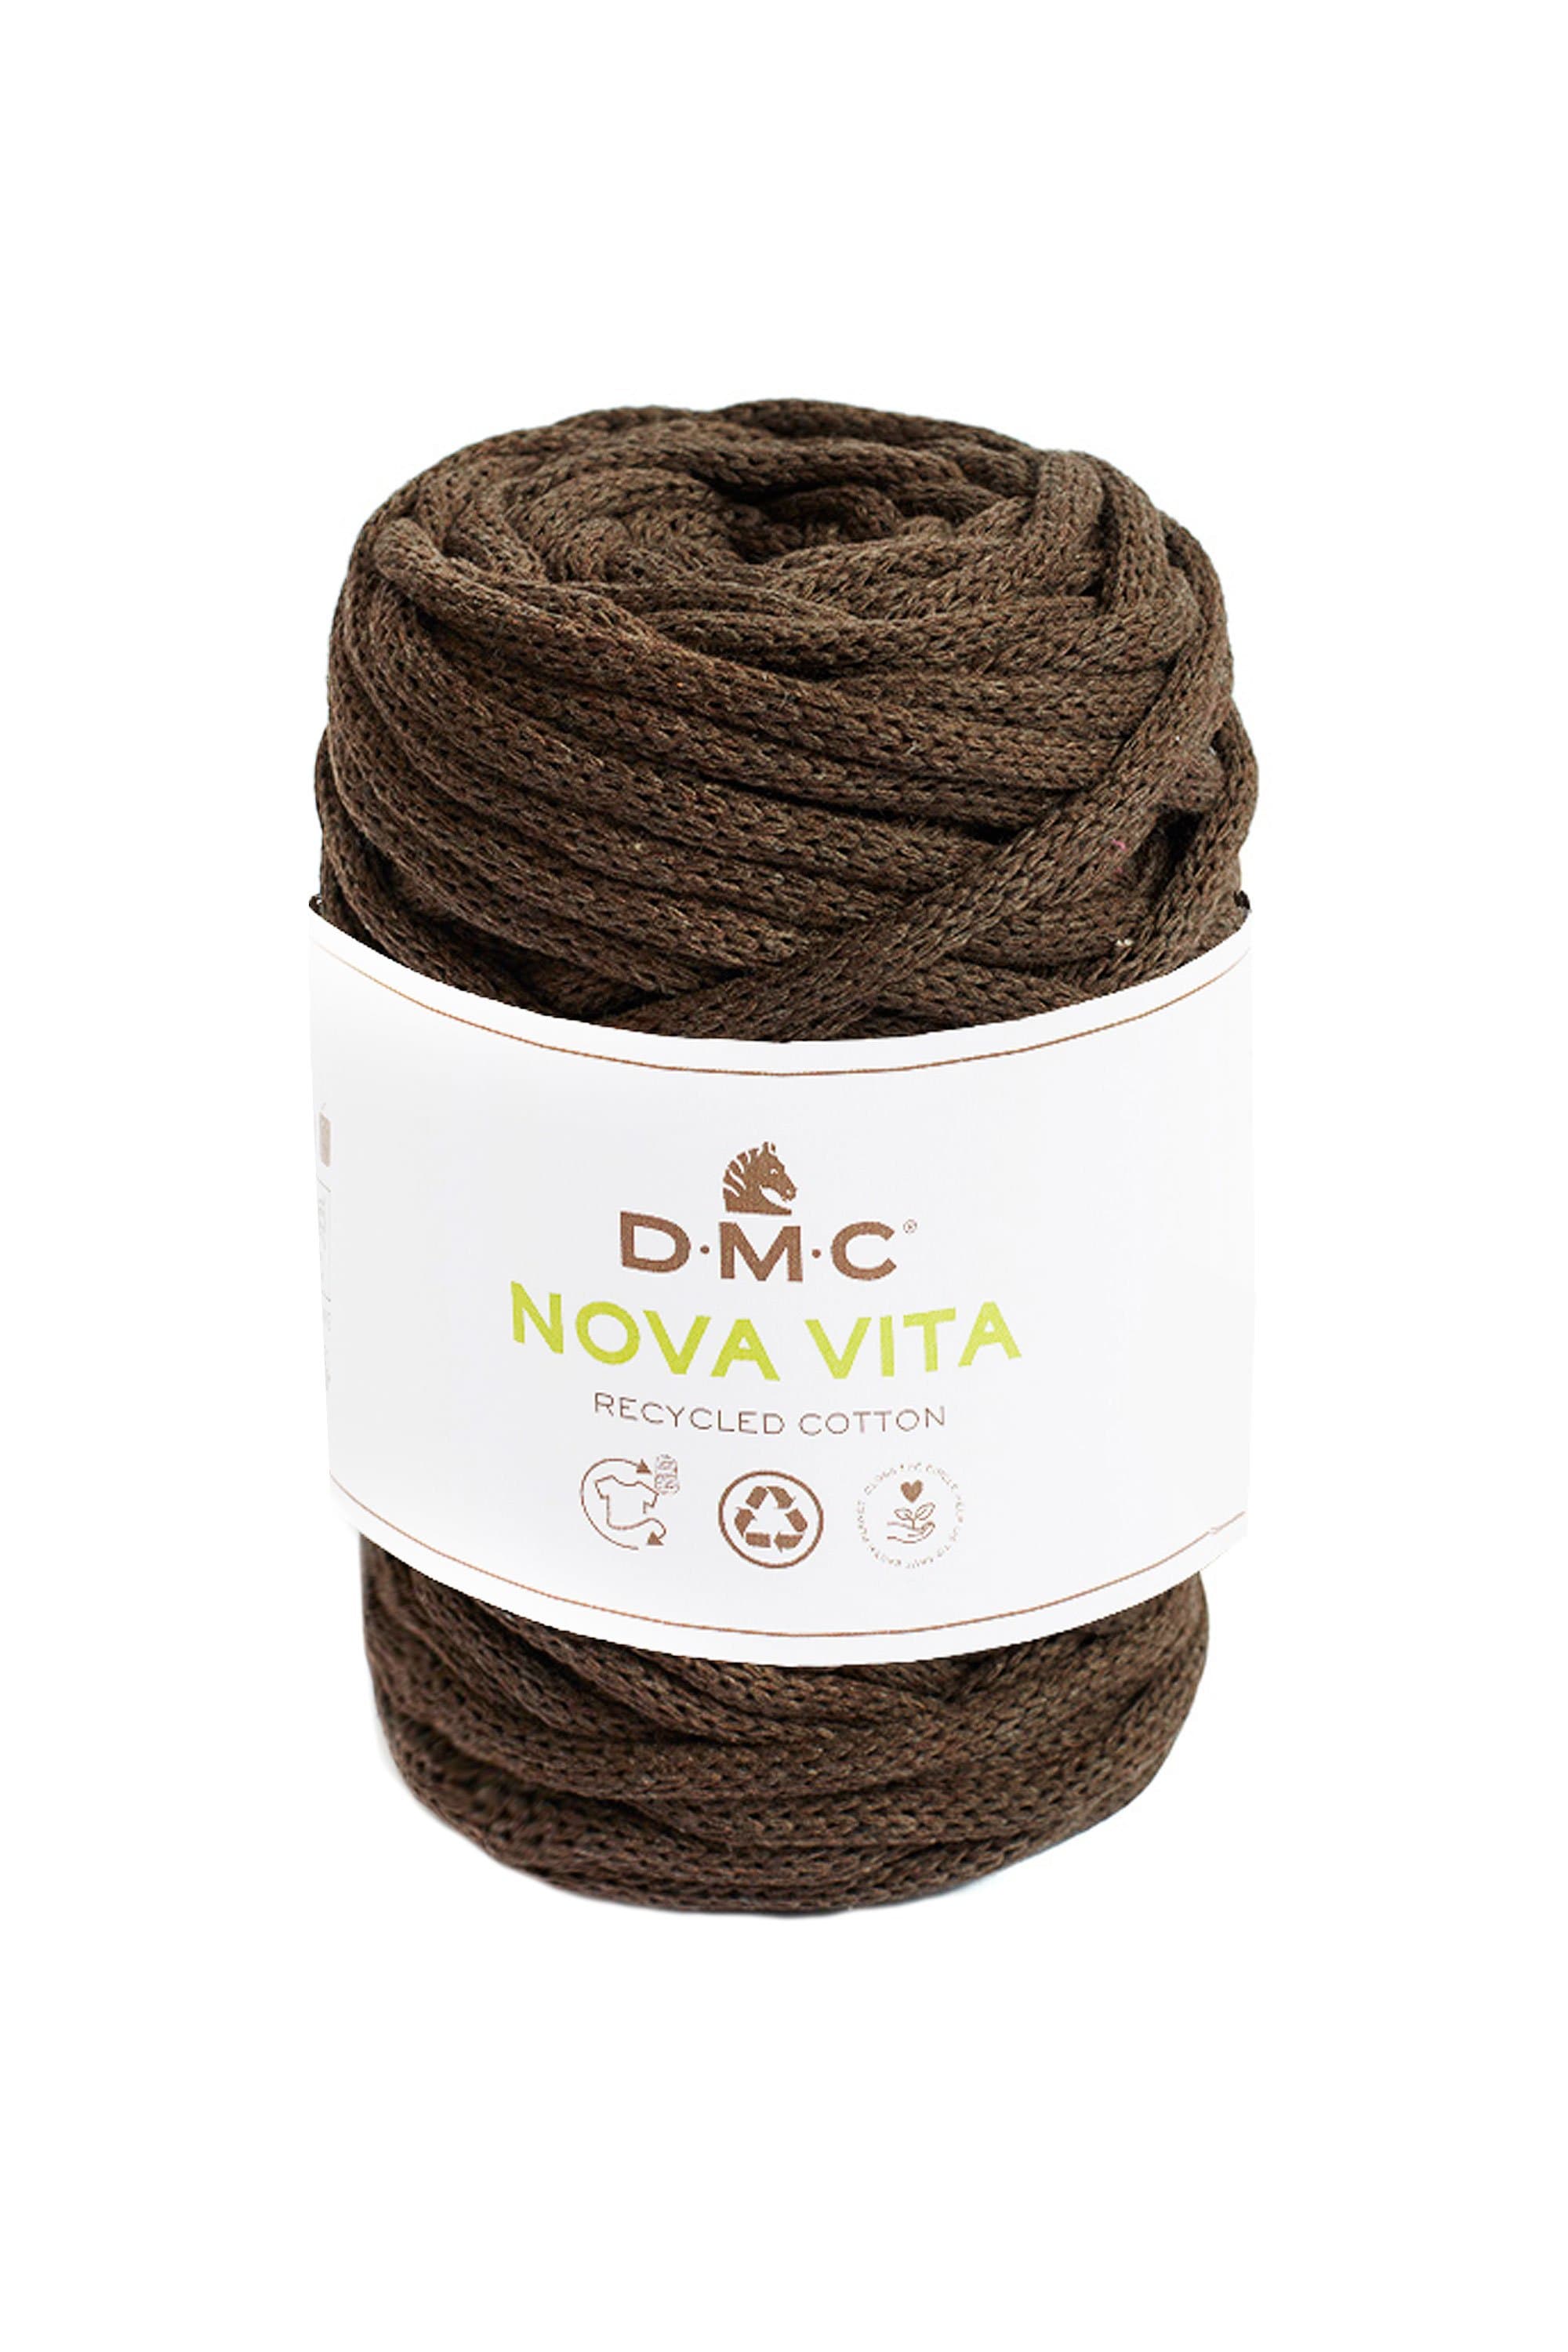 DMC Yarn 11 DMC Nova Vita